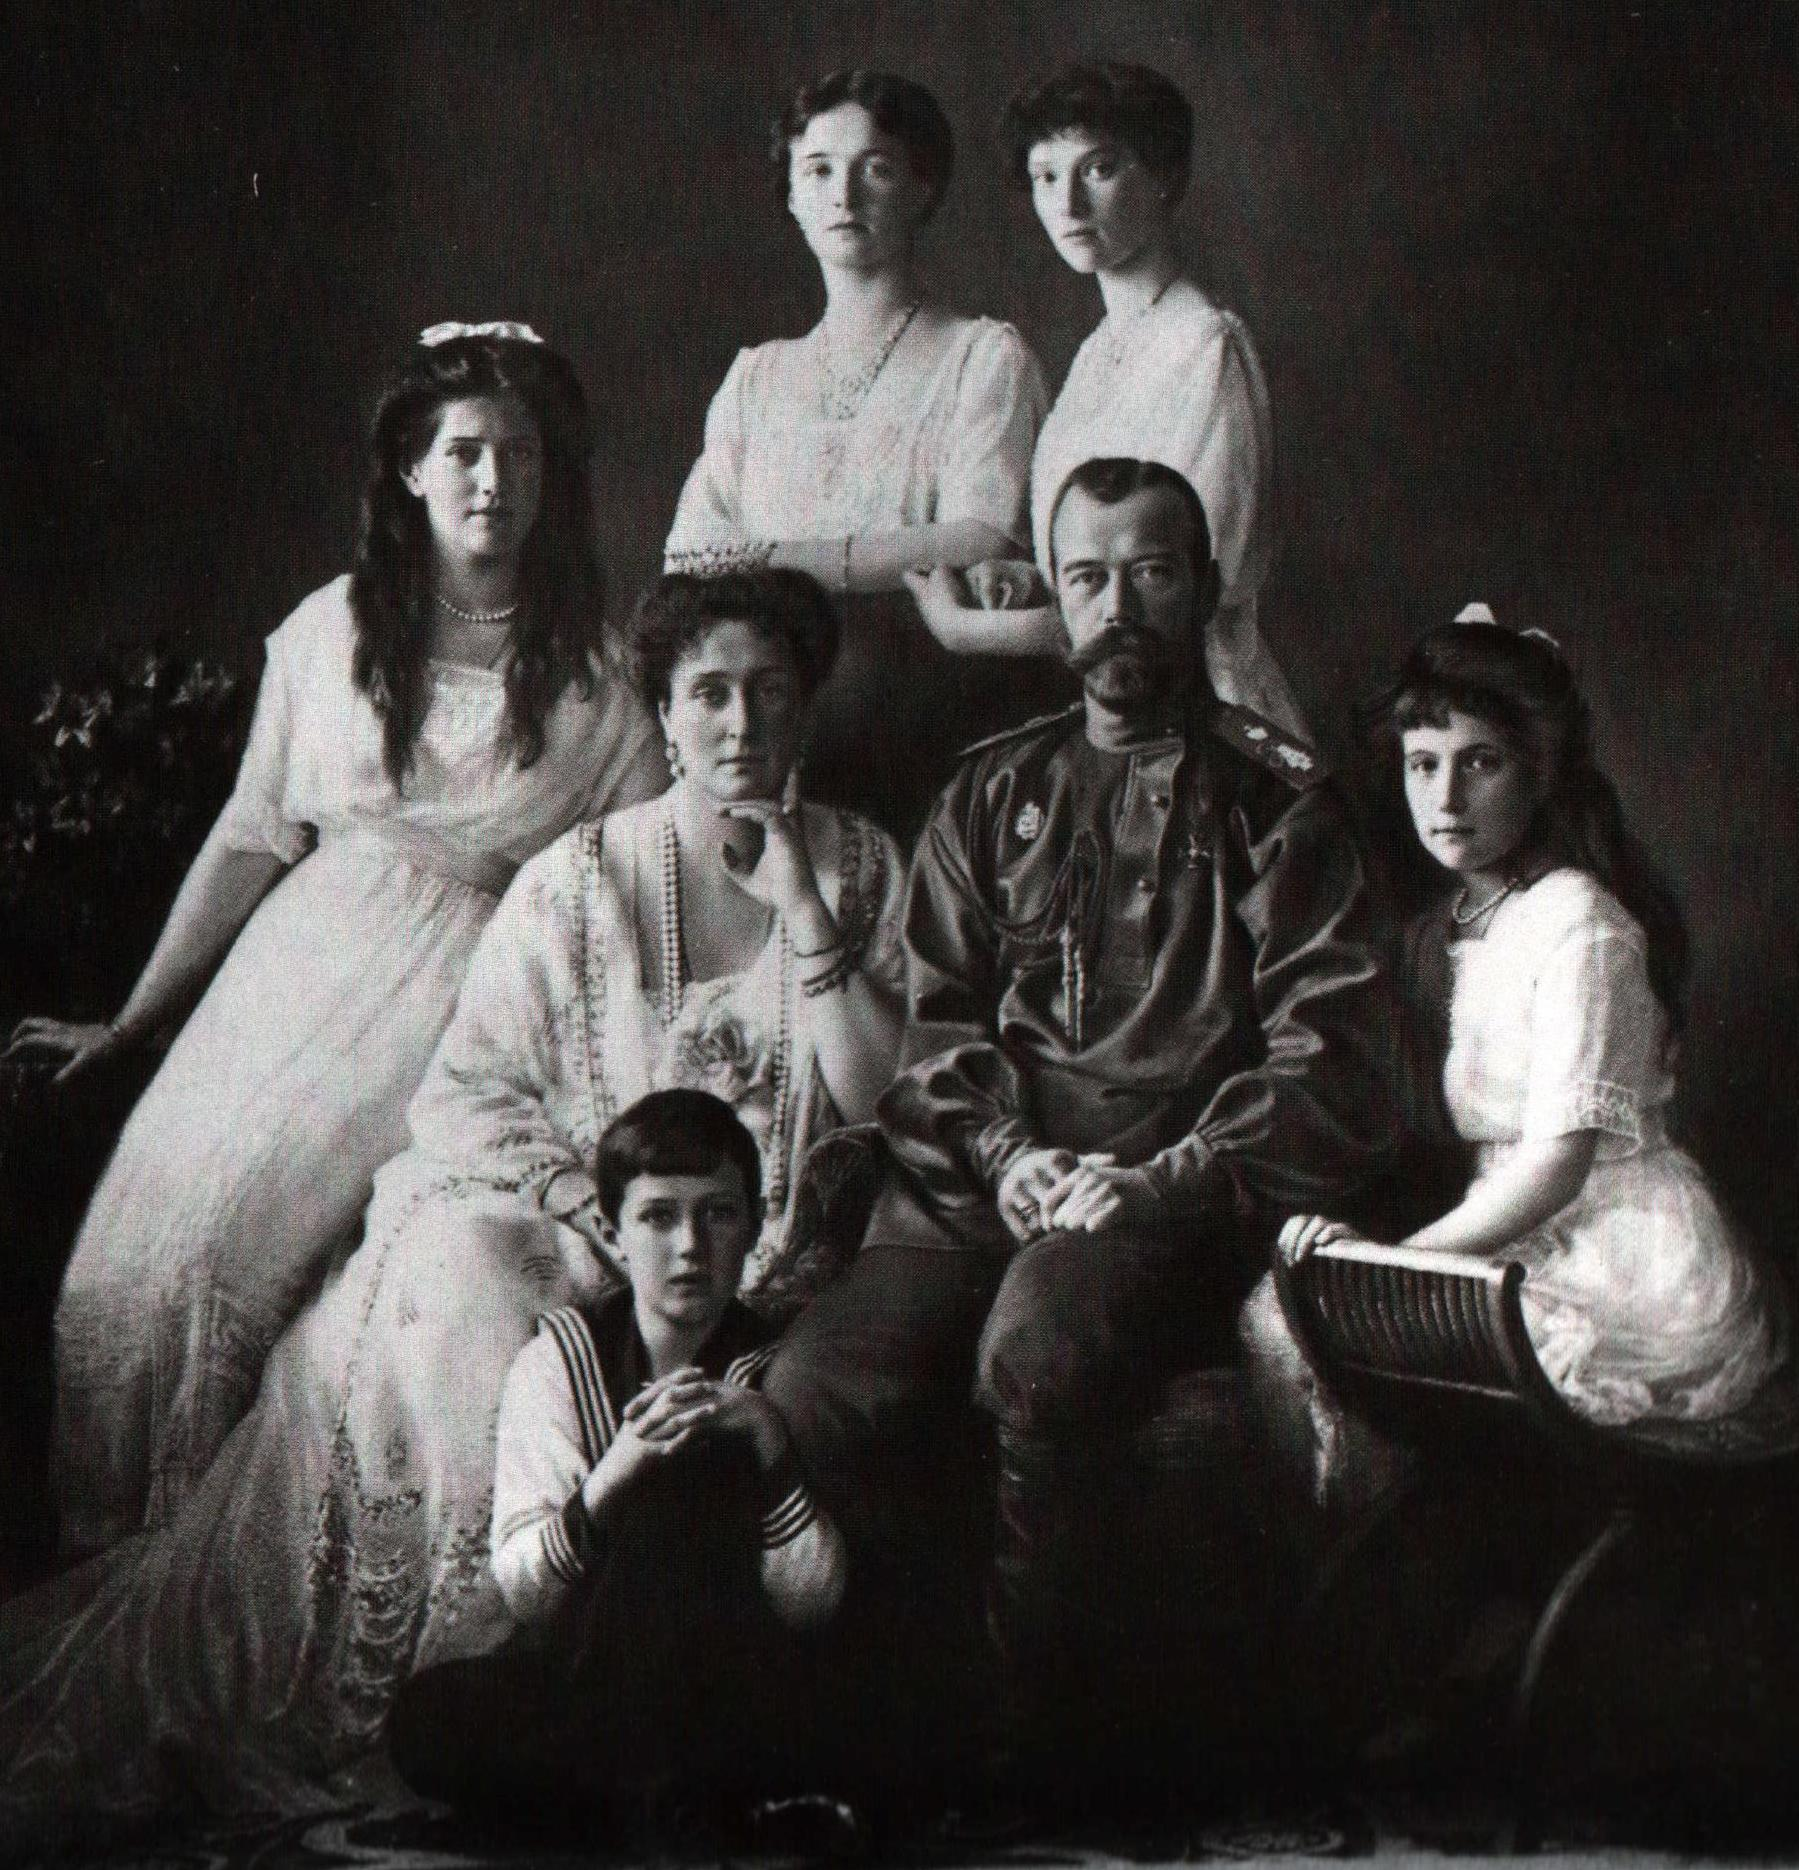 Az 1613 óta uralmon lévő Romanov orosz cári dinasztia bukását a polgári forradalom hozta el: 1917 márciusában lemondatták II. Miklós cárt, és családjával együtt őrizetbe vették.